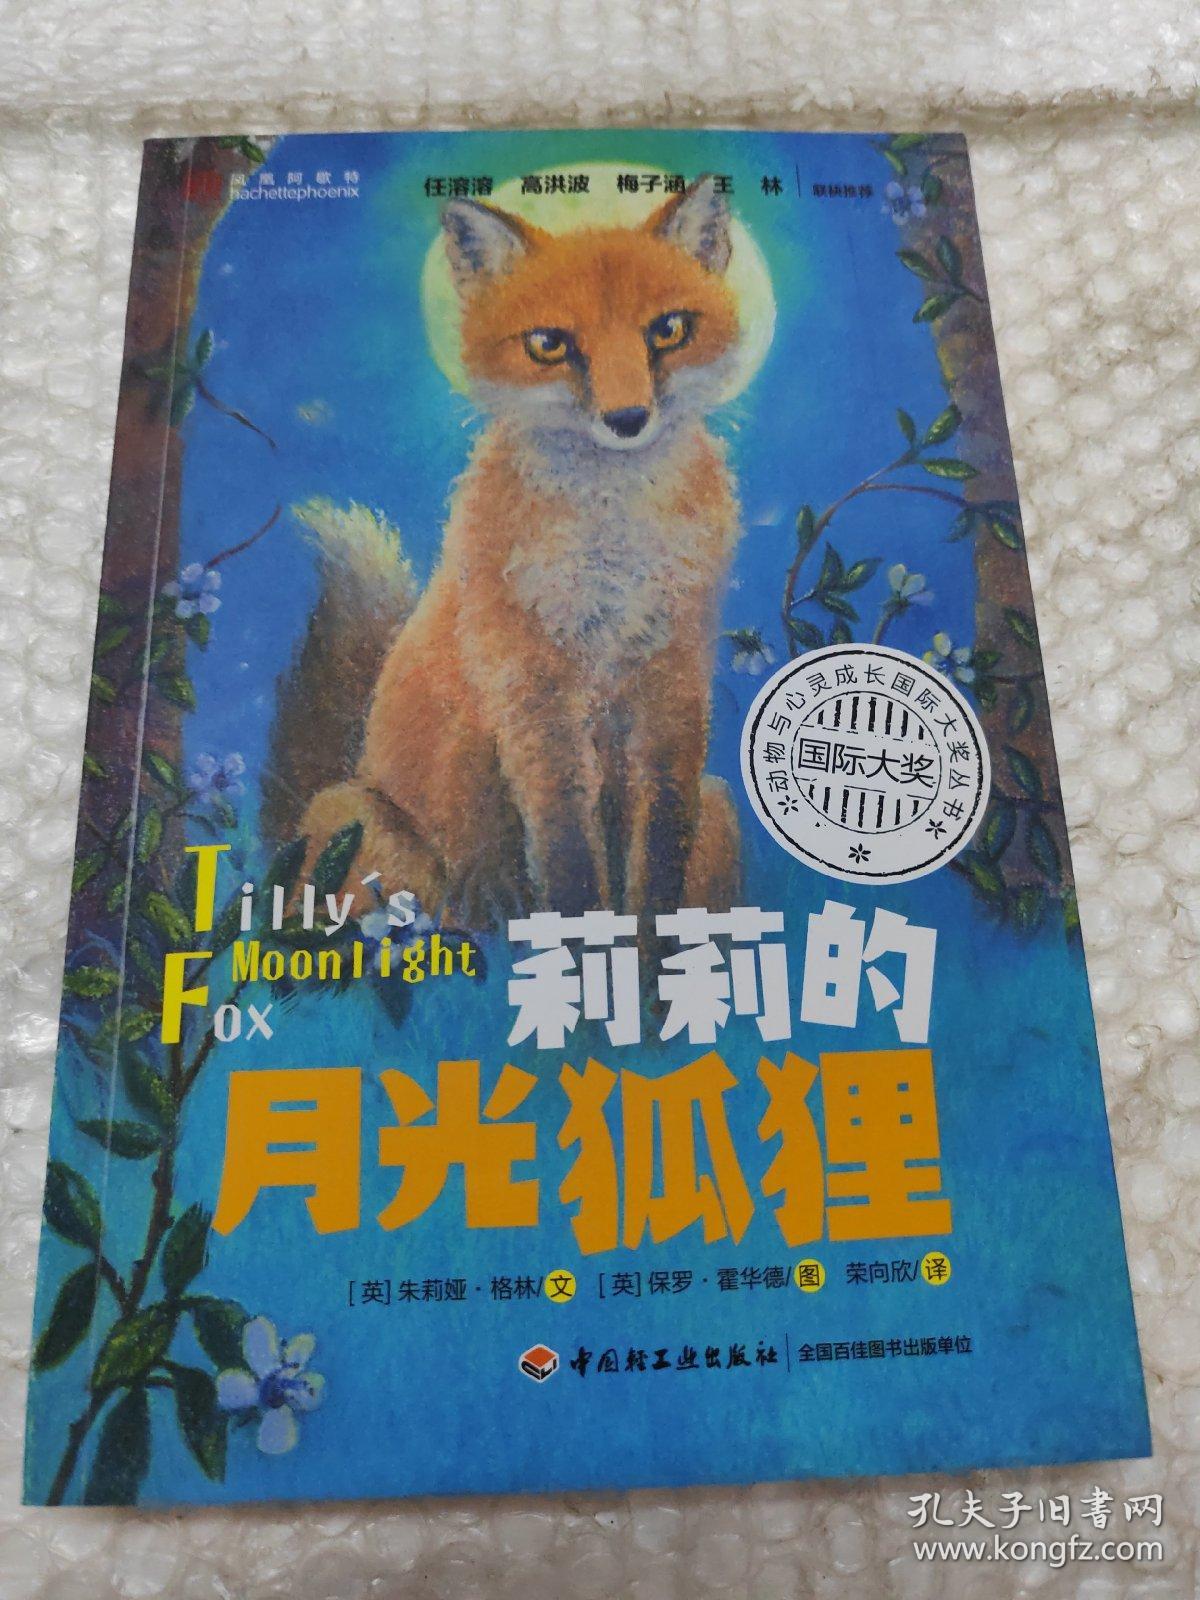 莉莉的月光狐狸——动物与心灵成长国际大奖丛书